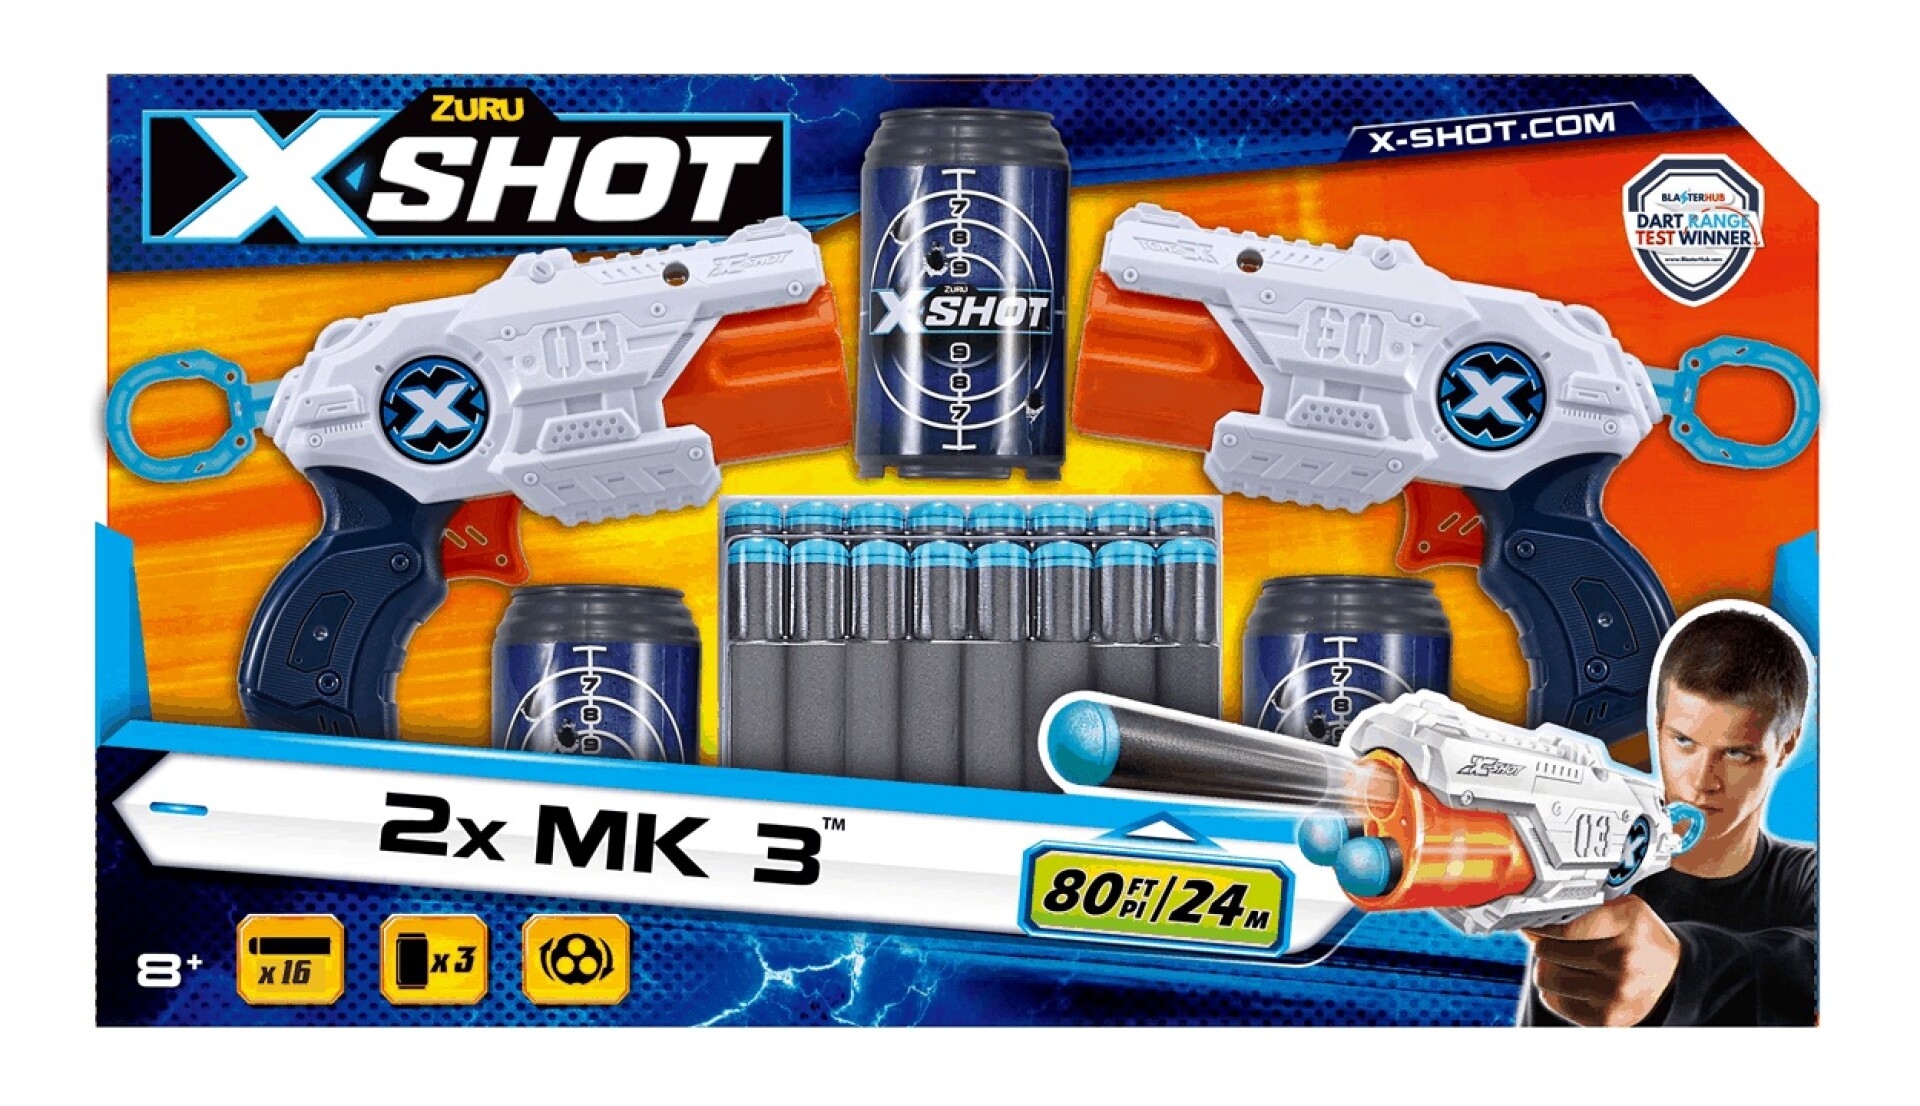 Pistolas de Dardos X-shot Excel MK3 X 2 16 Dardos y Latas - 001 